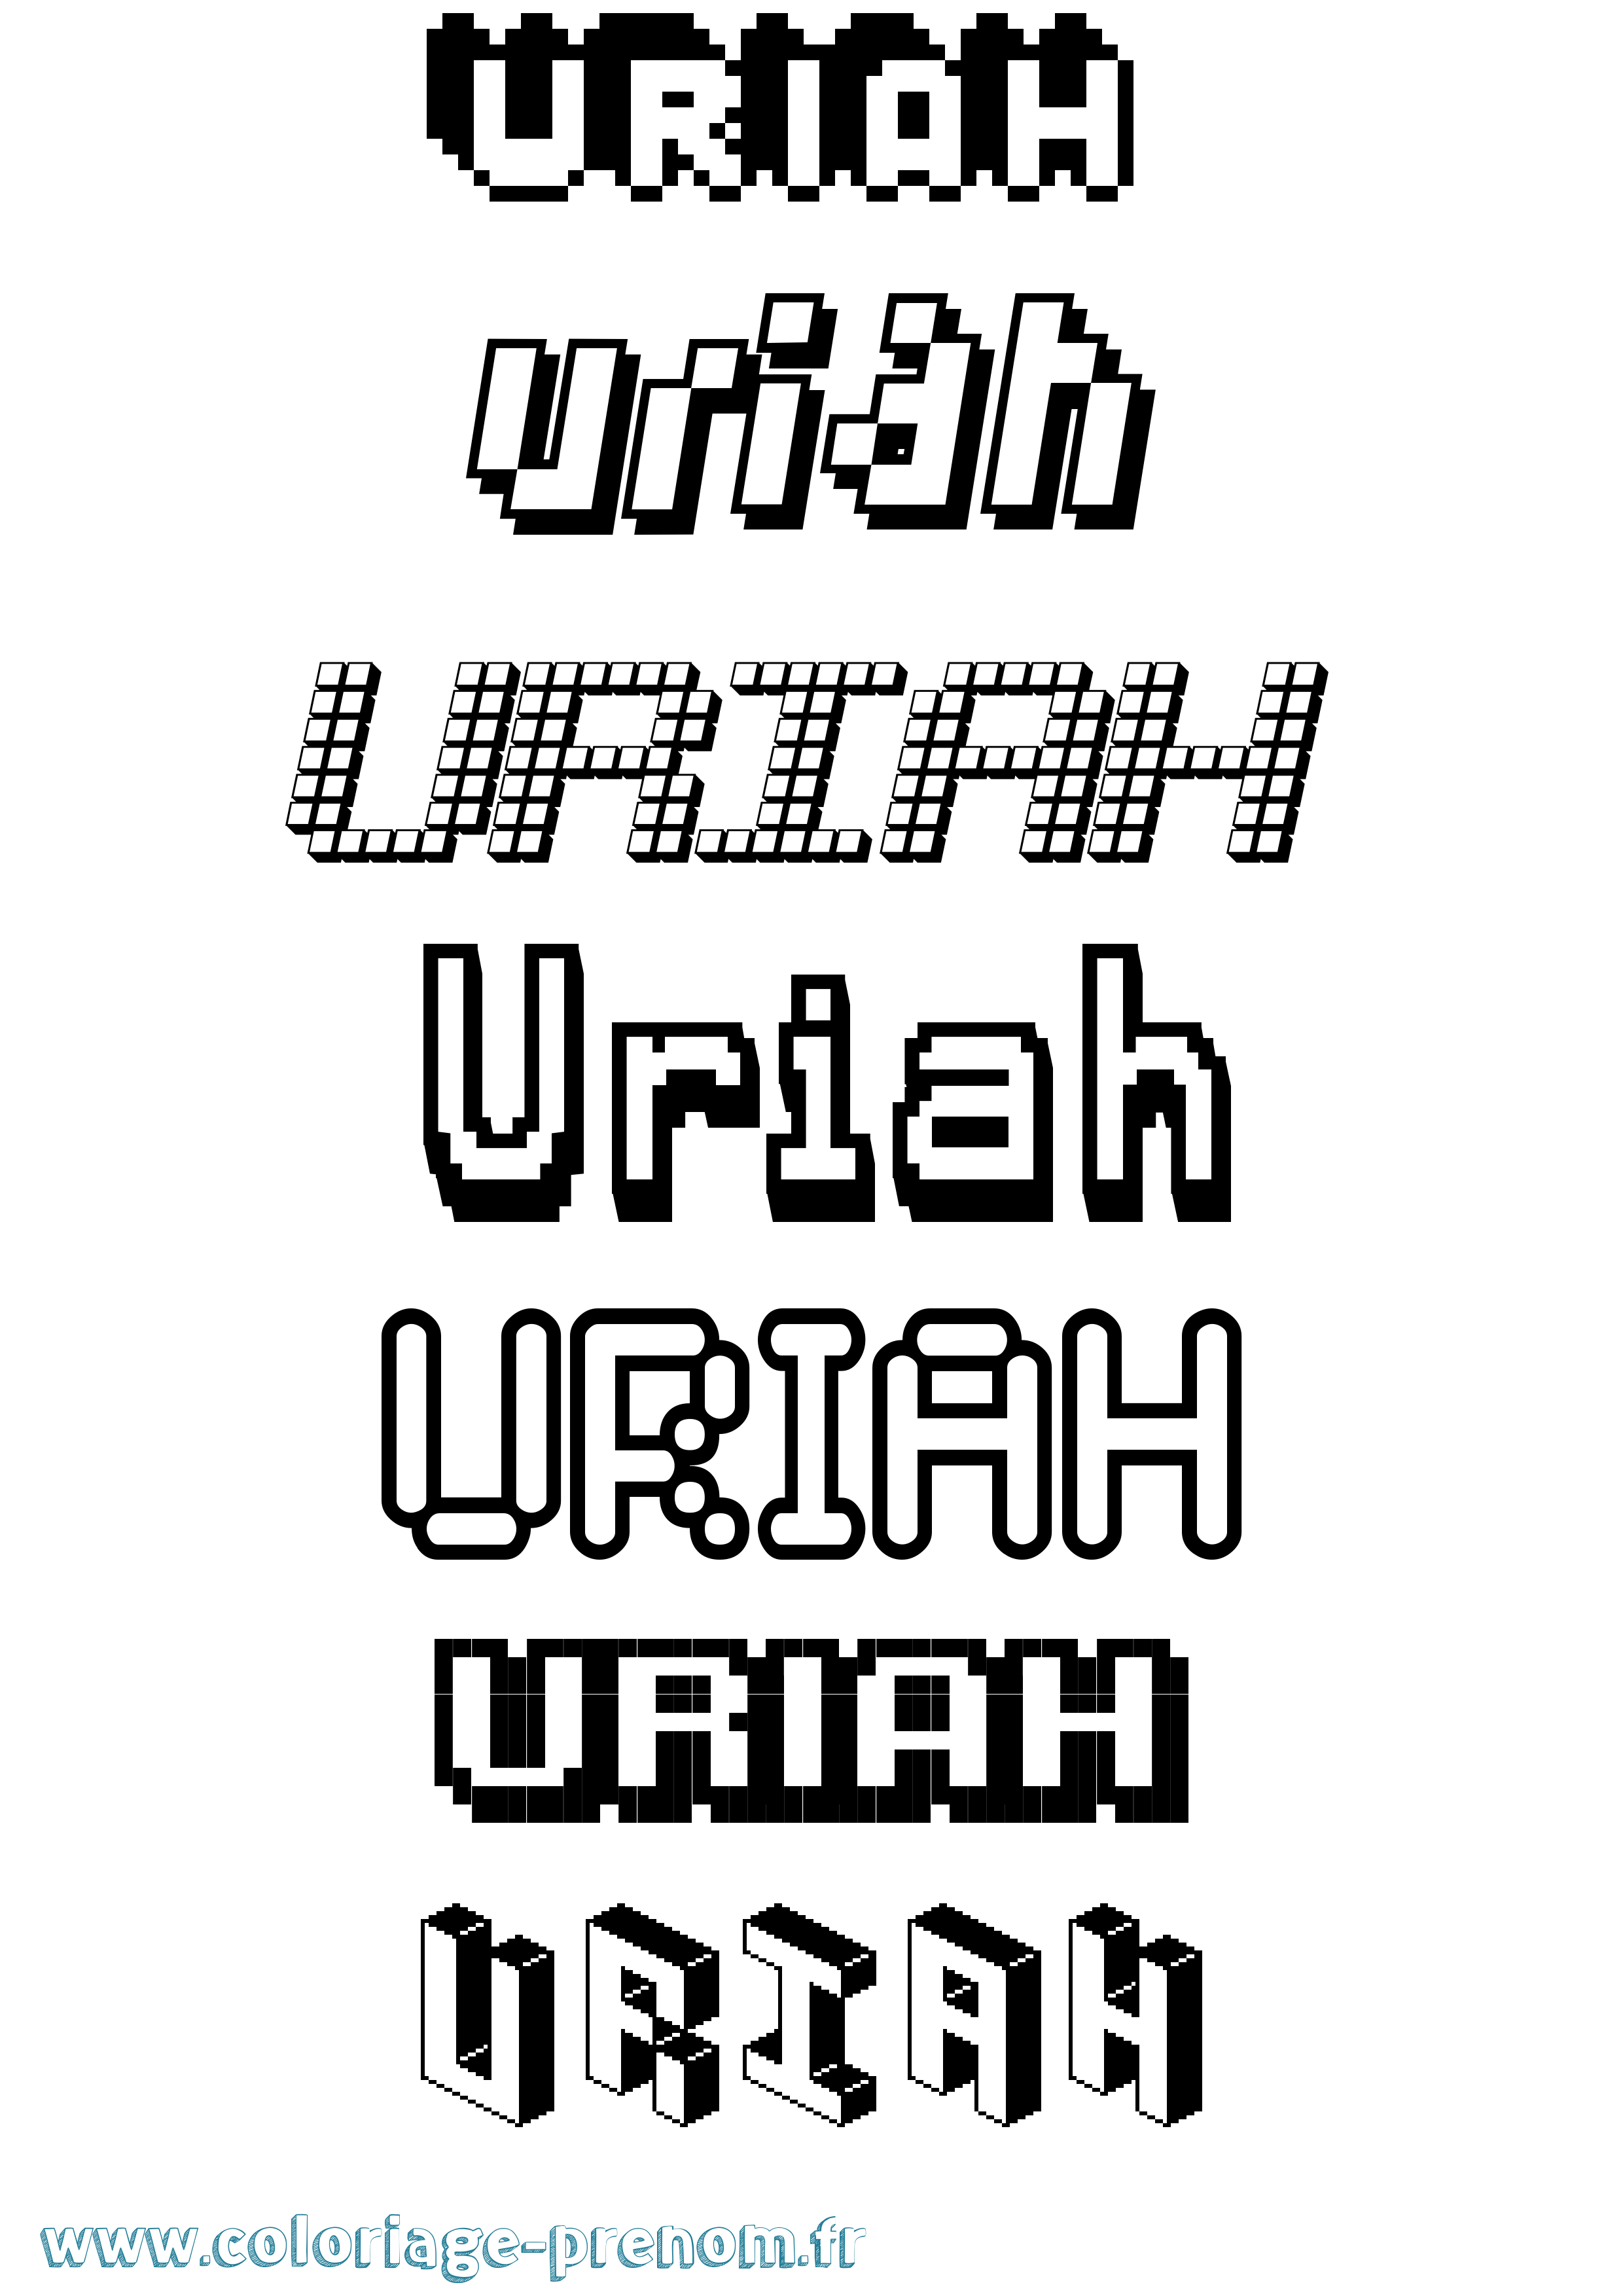 Coloriage prénom Uriah Pixel